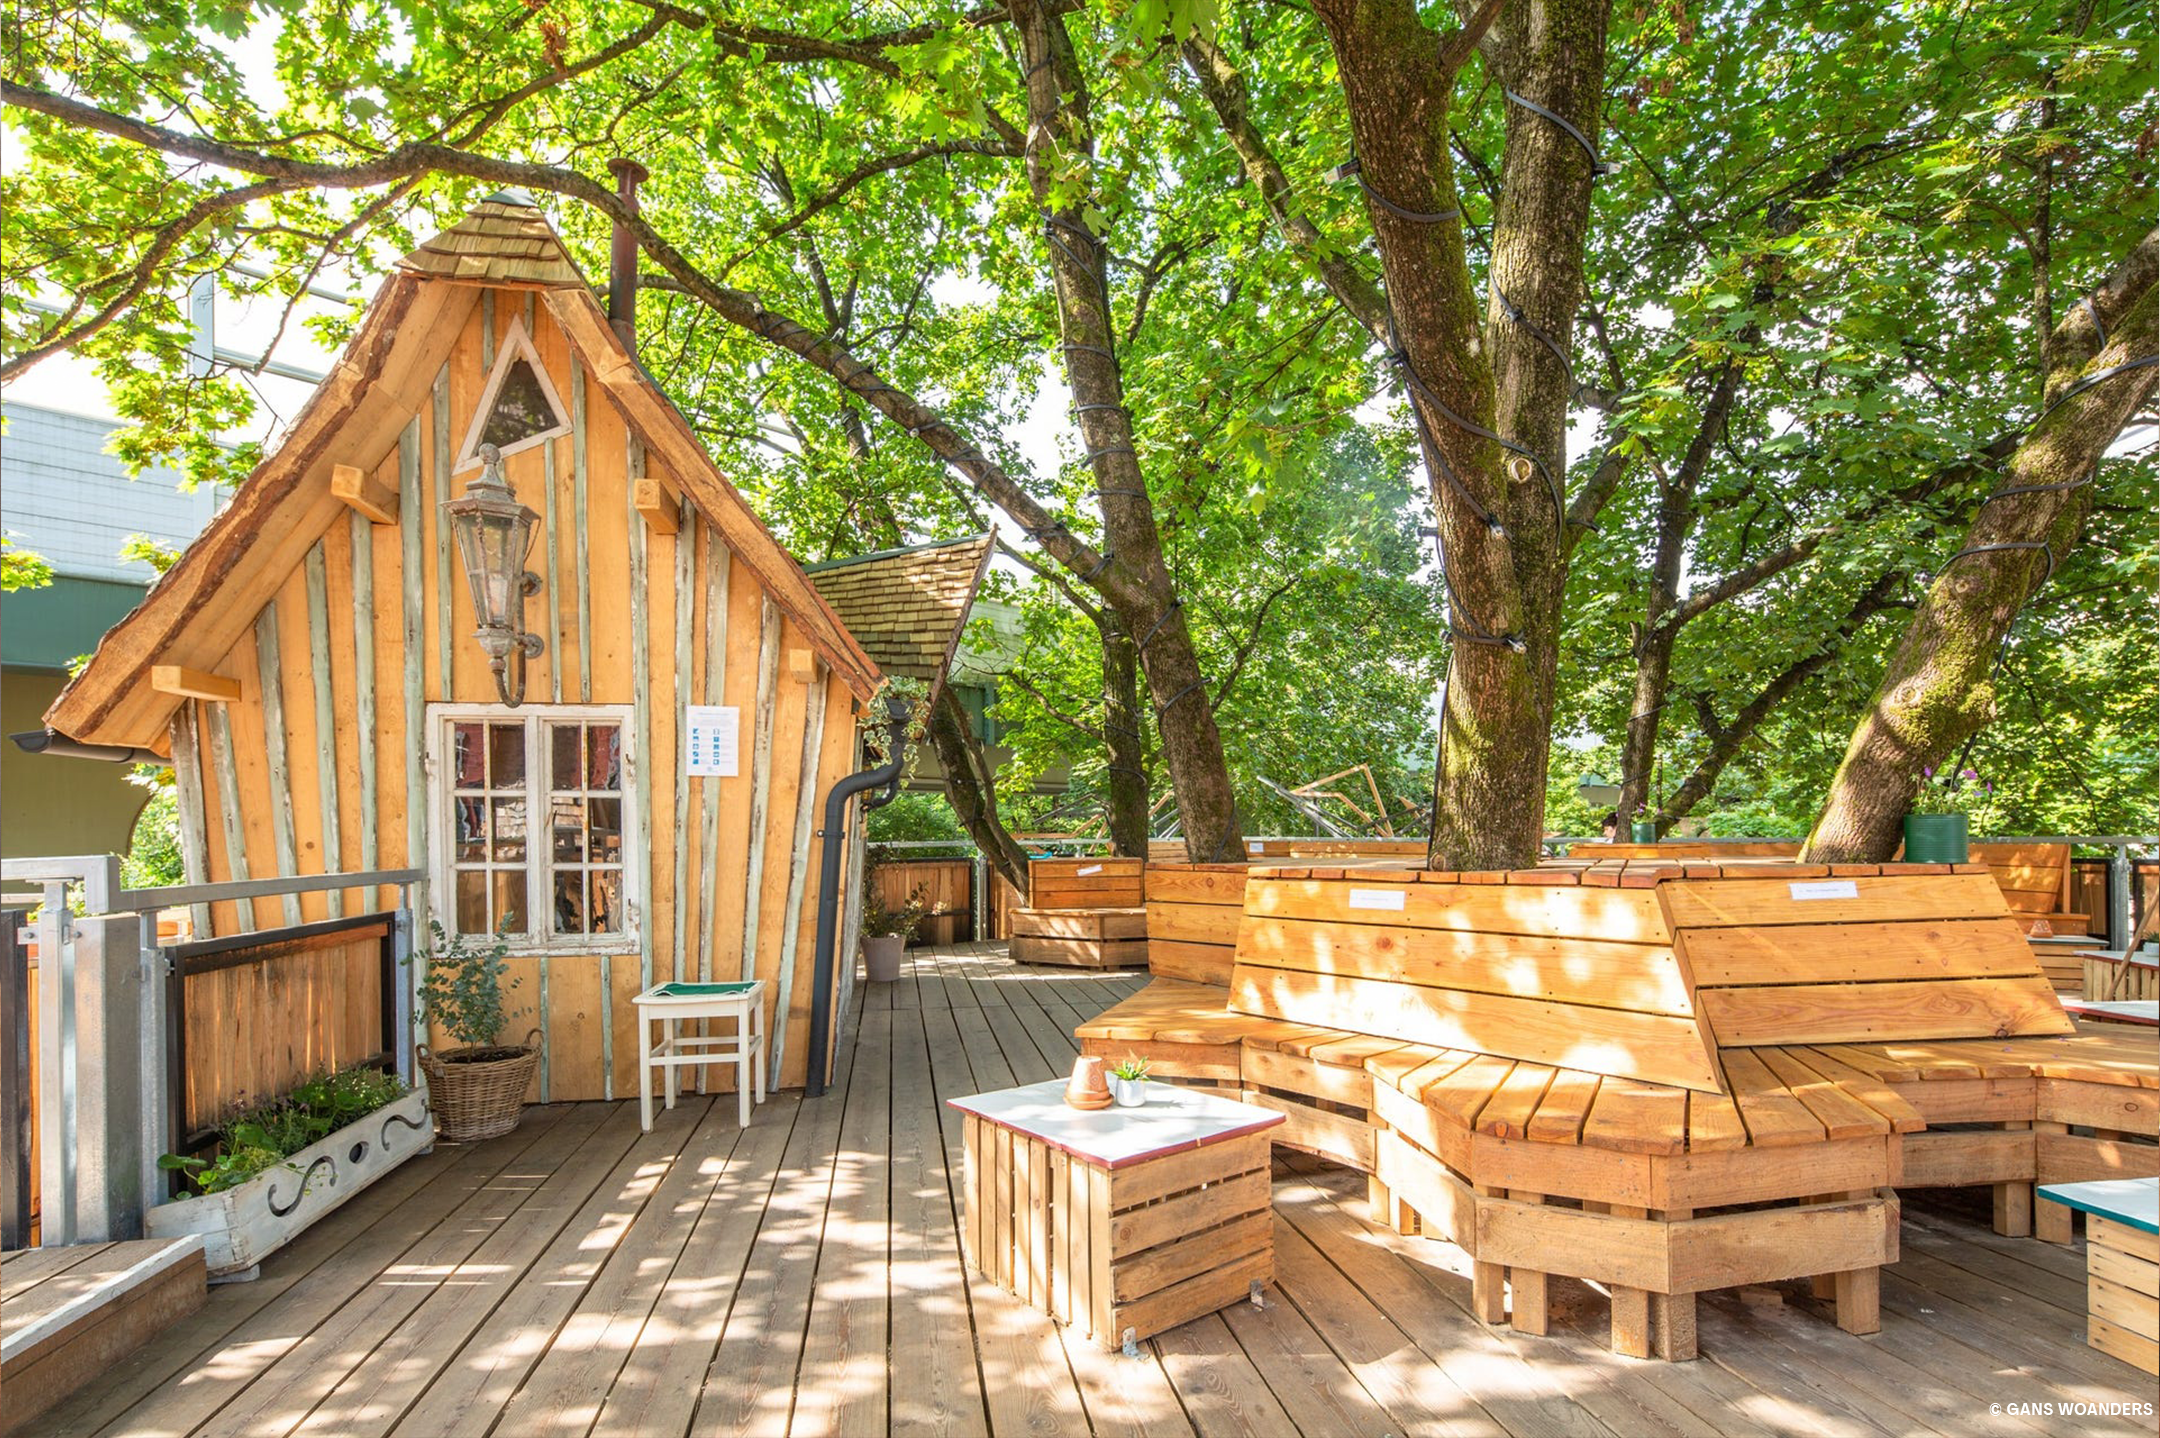 Ein kleines Holzhaus mit direkt anschließender Holzterrasse und Sitzgelegenheiten aus Holz, die Stämme eines Baumes dahinter